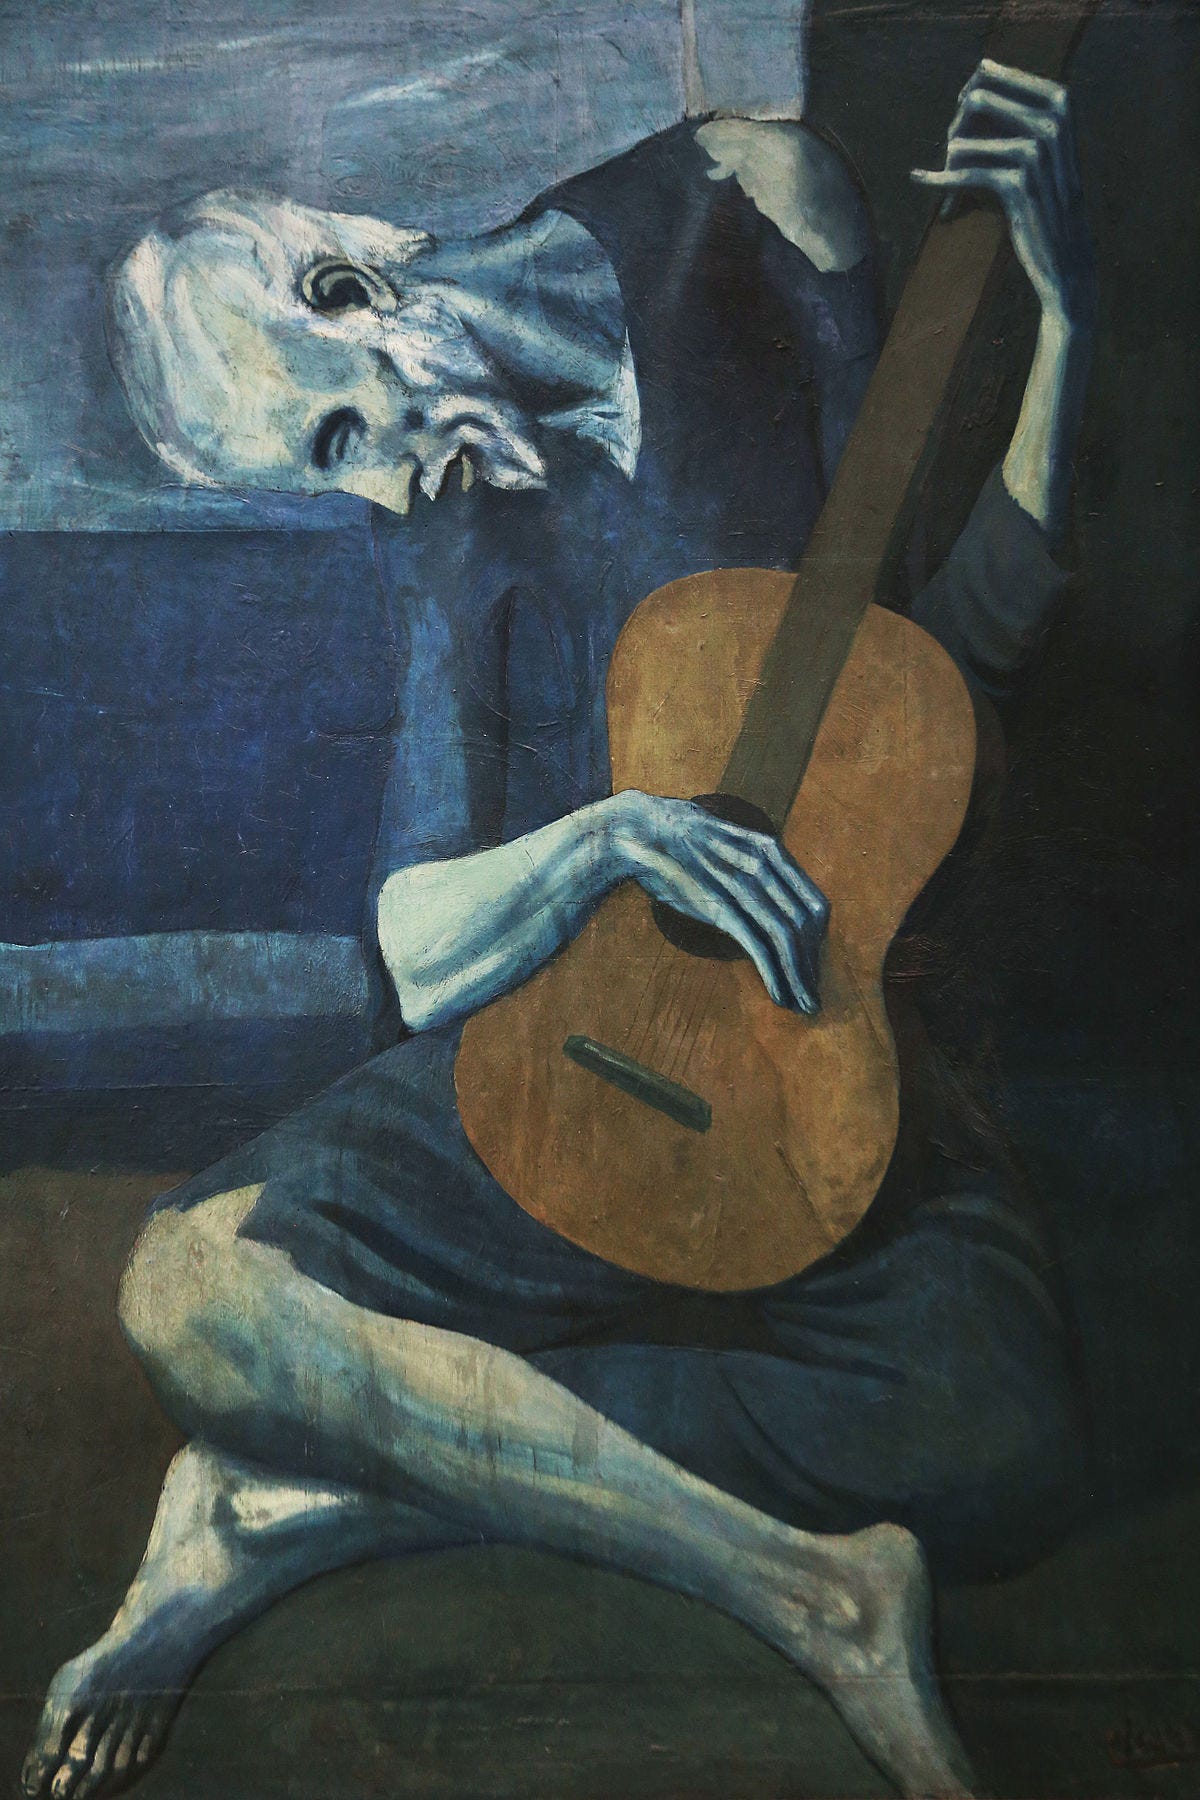 Picasso's Blue Period - Wikipedia